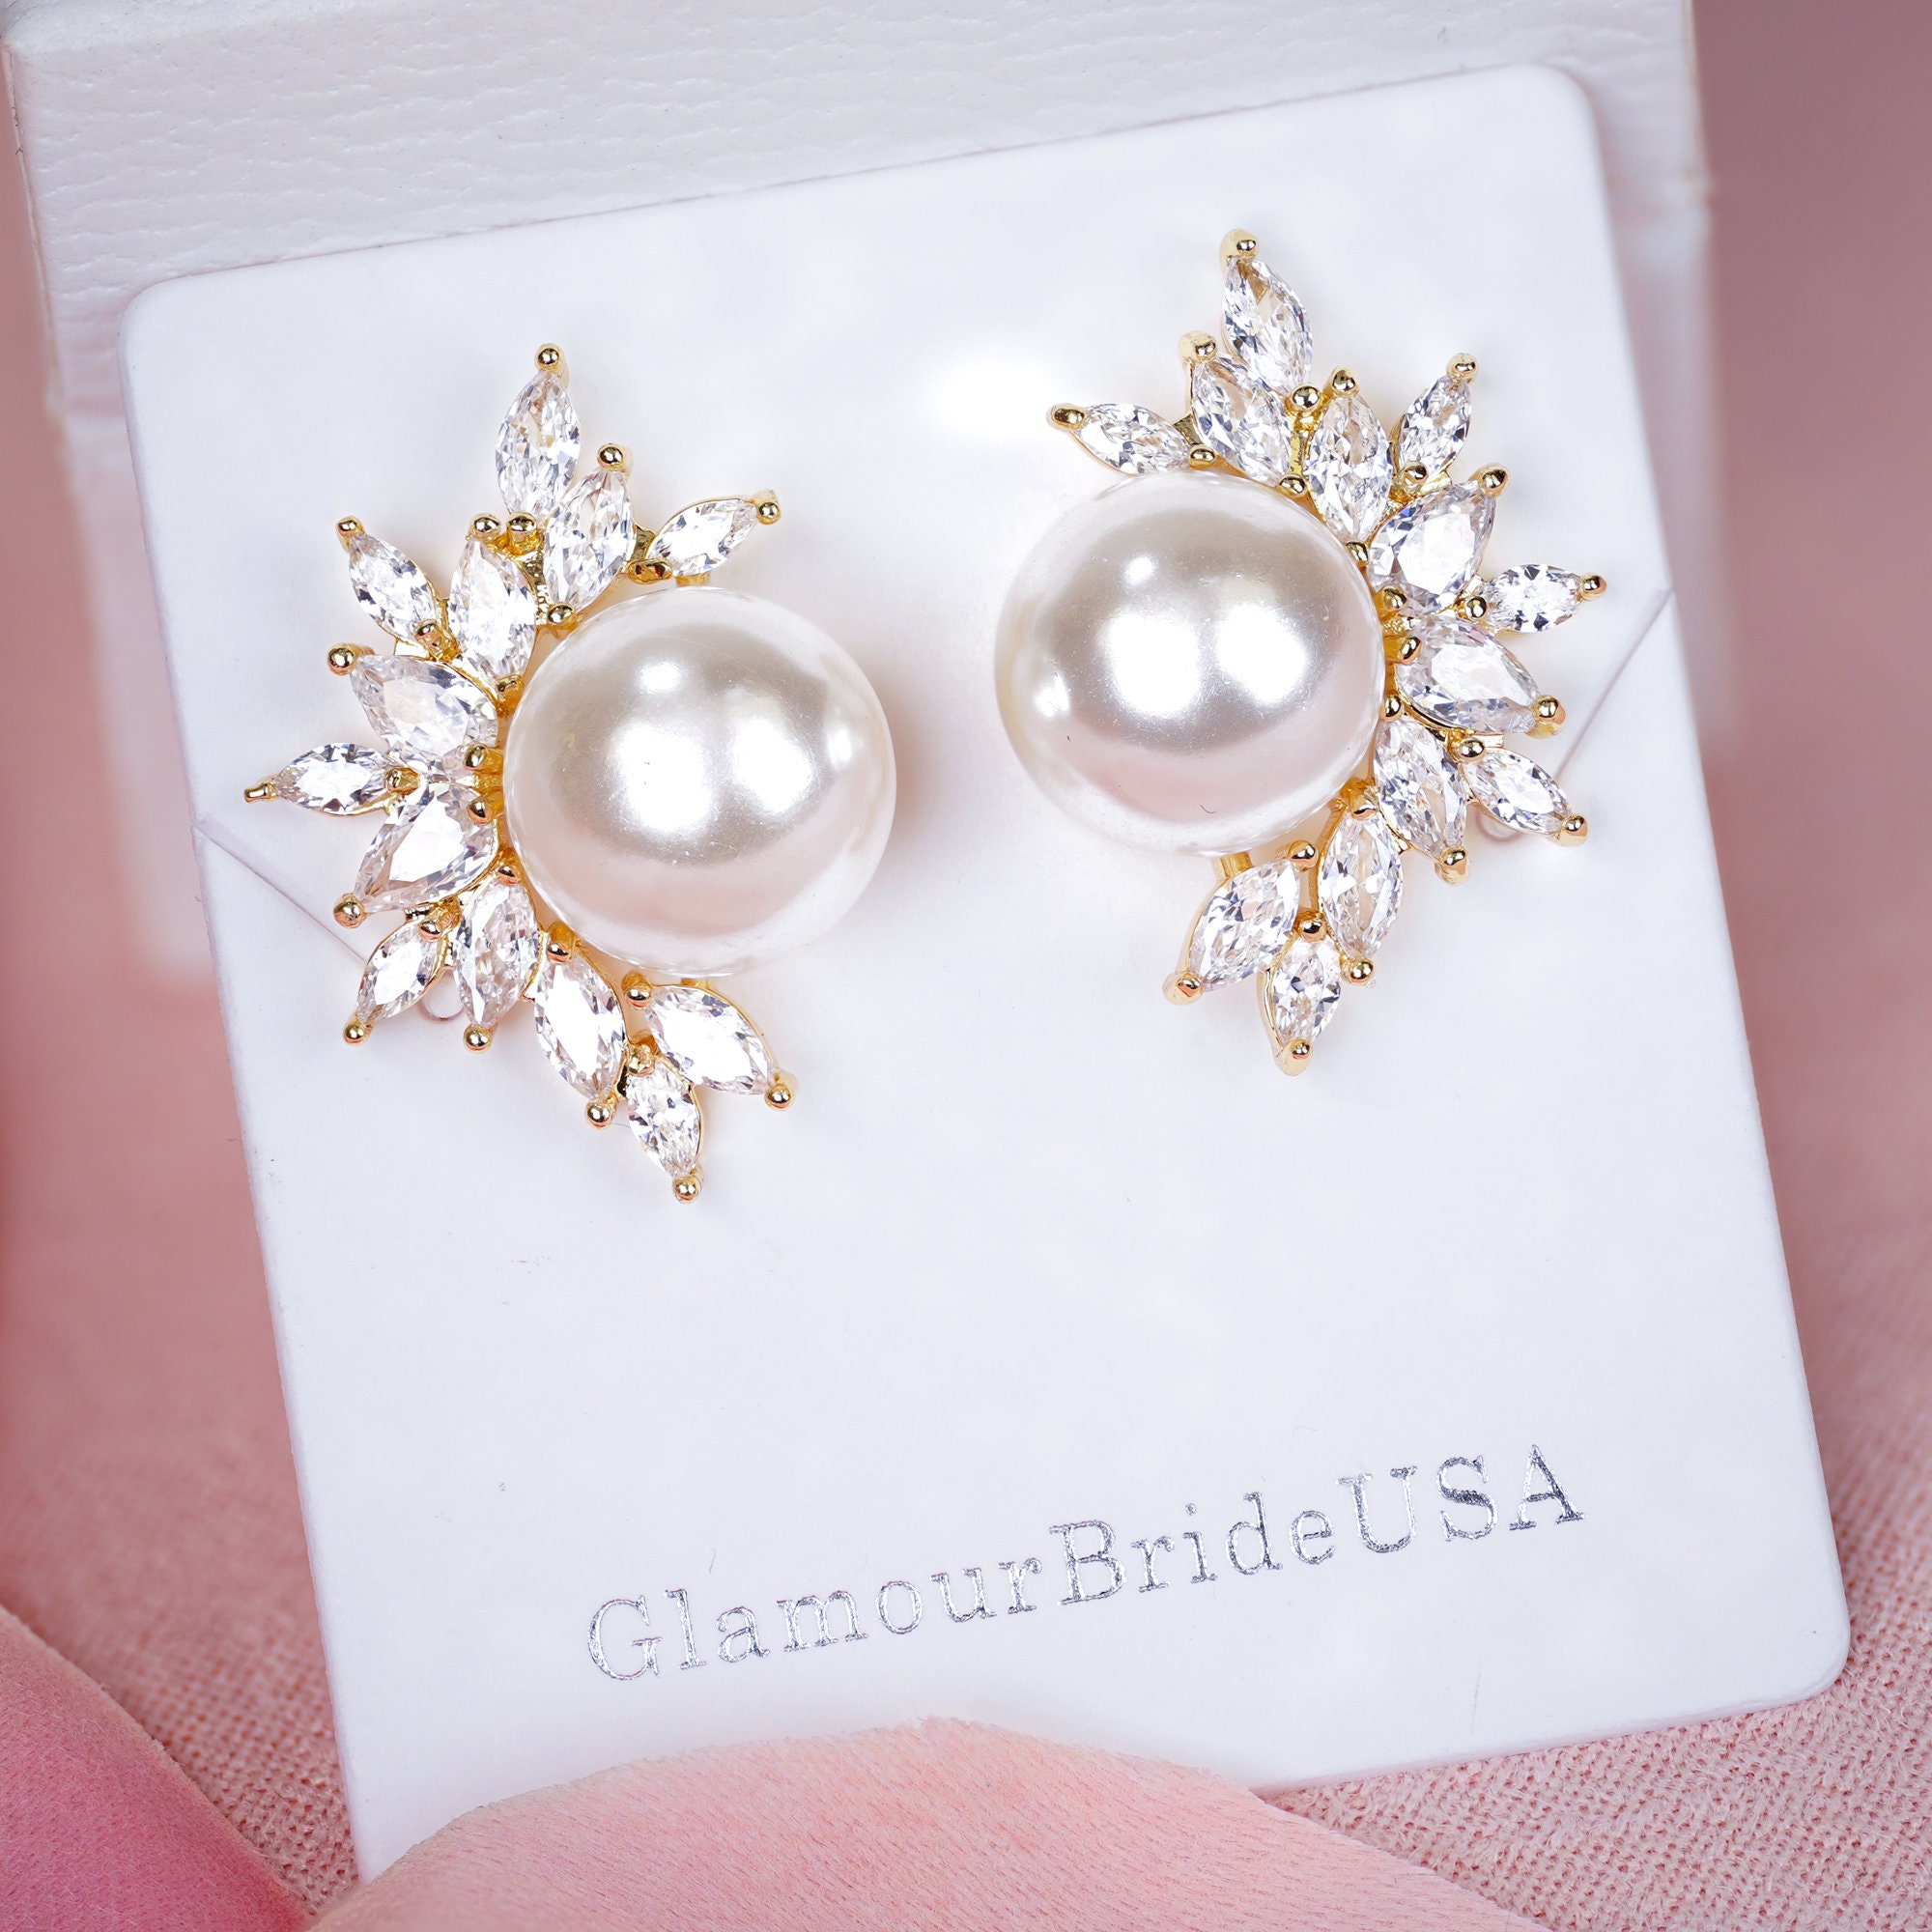 Buy Pearl Earrings Bridal Jewelry Stud Earrings Wedding Online in India   Etsy